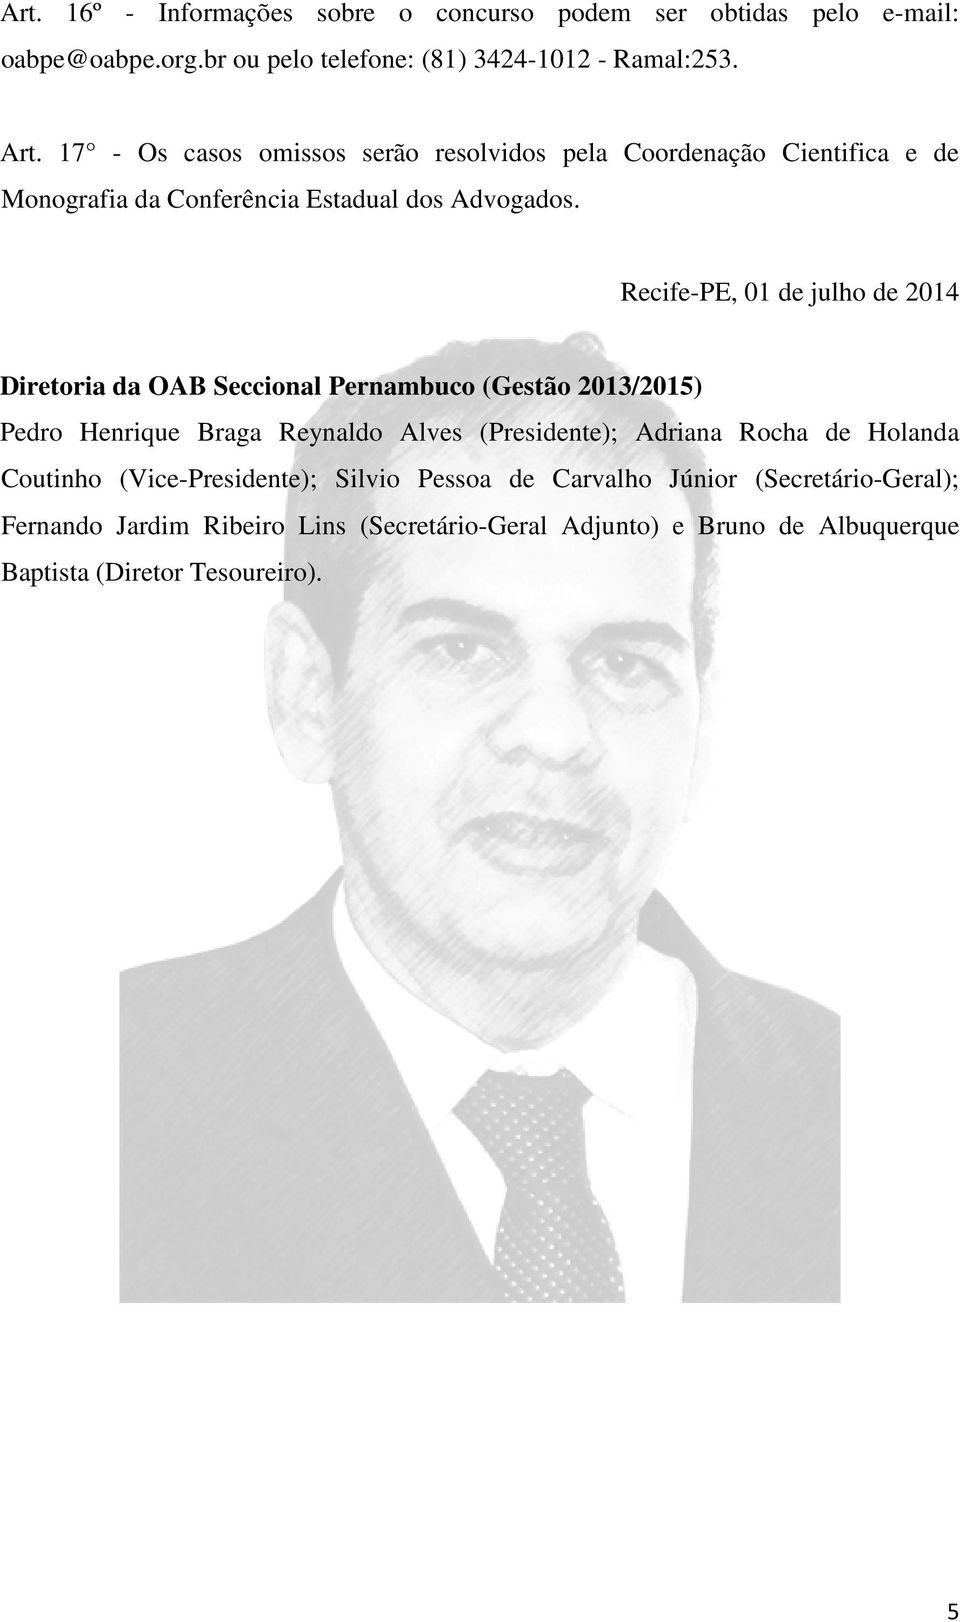 Recife-PE, 01 de julho de 2014 Diretoria da OAB Seccional Pernambuco (Gestão 2013/2015) Pedro Henrique Braga Reynaldo Alves (Presidente); Adriana Rocha de